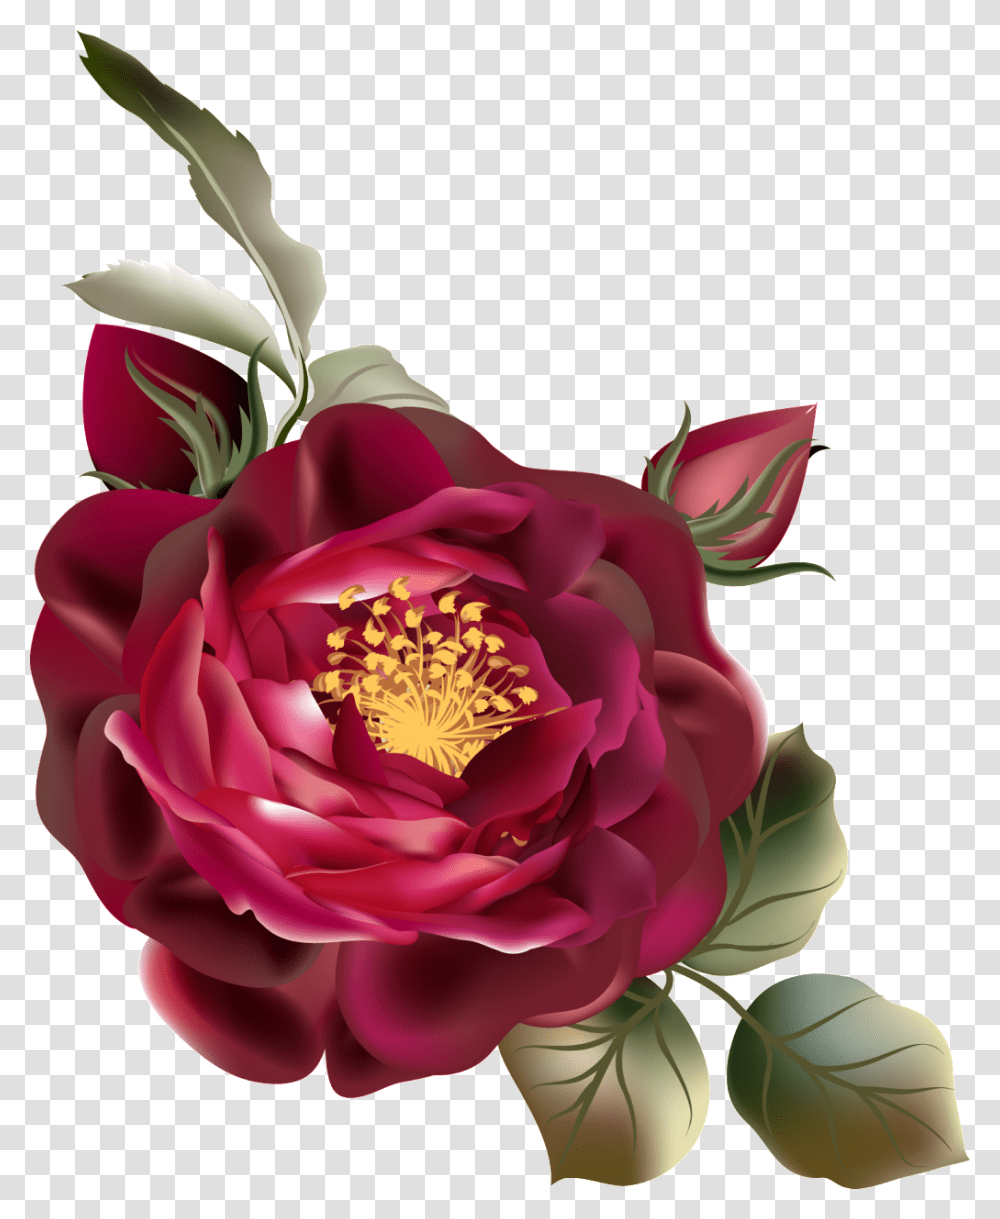 De De Cor De Rosa Vermelha Vintage Flor Vermelha, Plant, Flower, Blossom, Petal Transparent Png